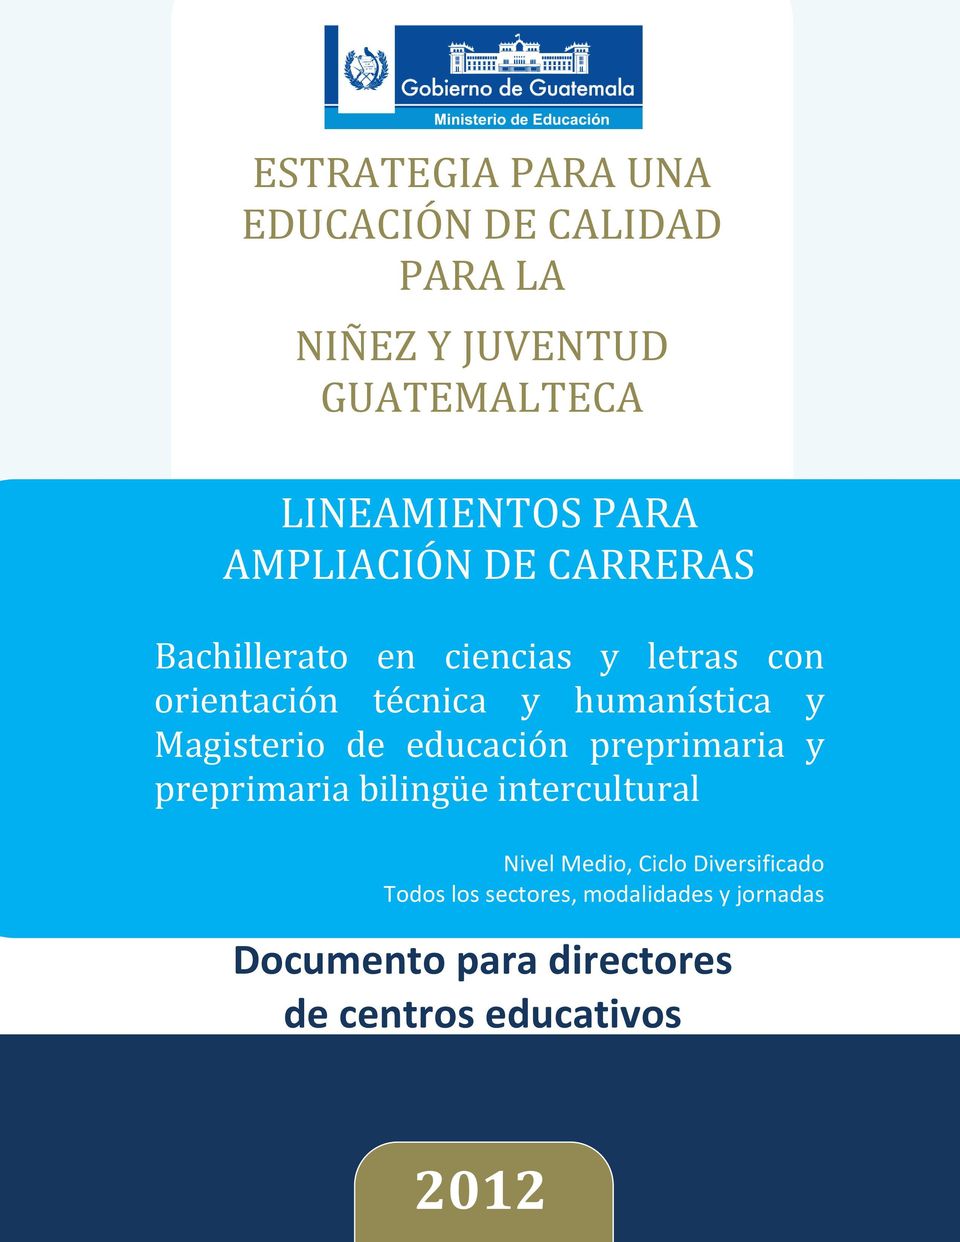 Magisterio de educación preprimaria y preprimaria bilingüe intercultural Nivel Medio, Ciclo